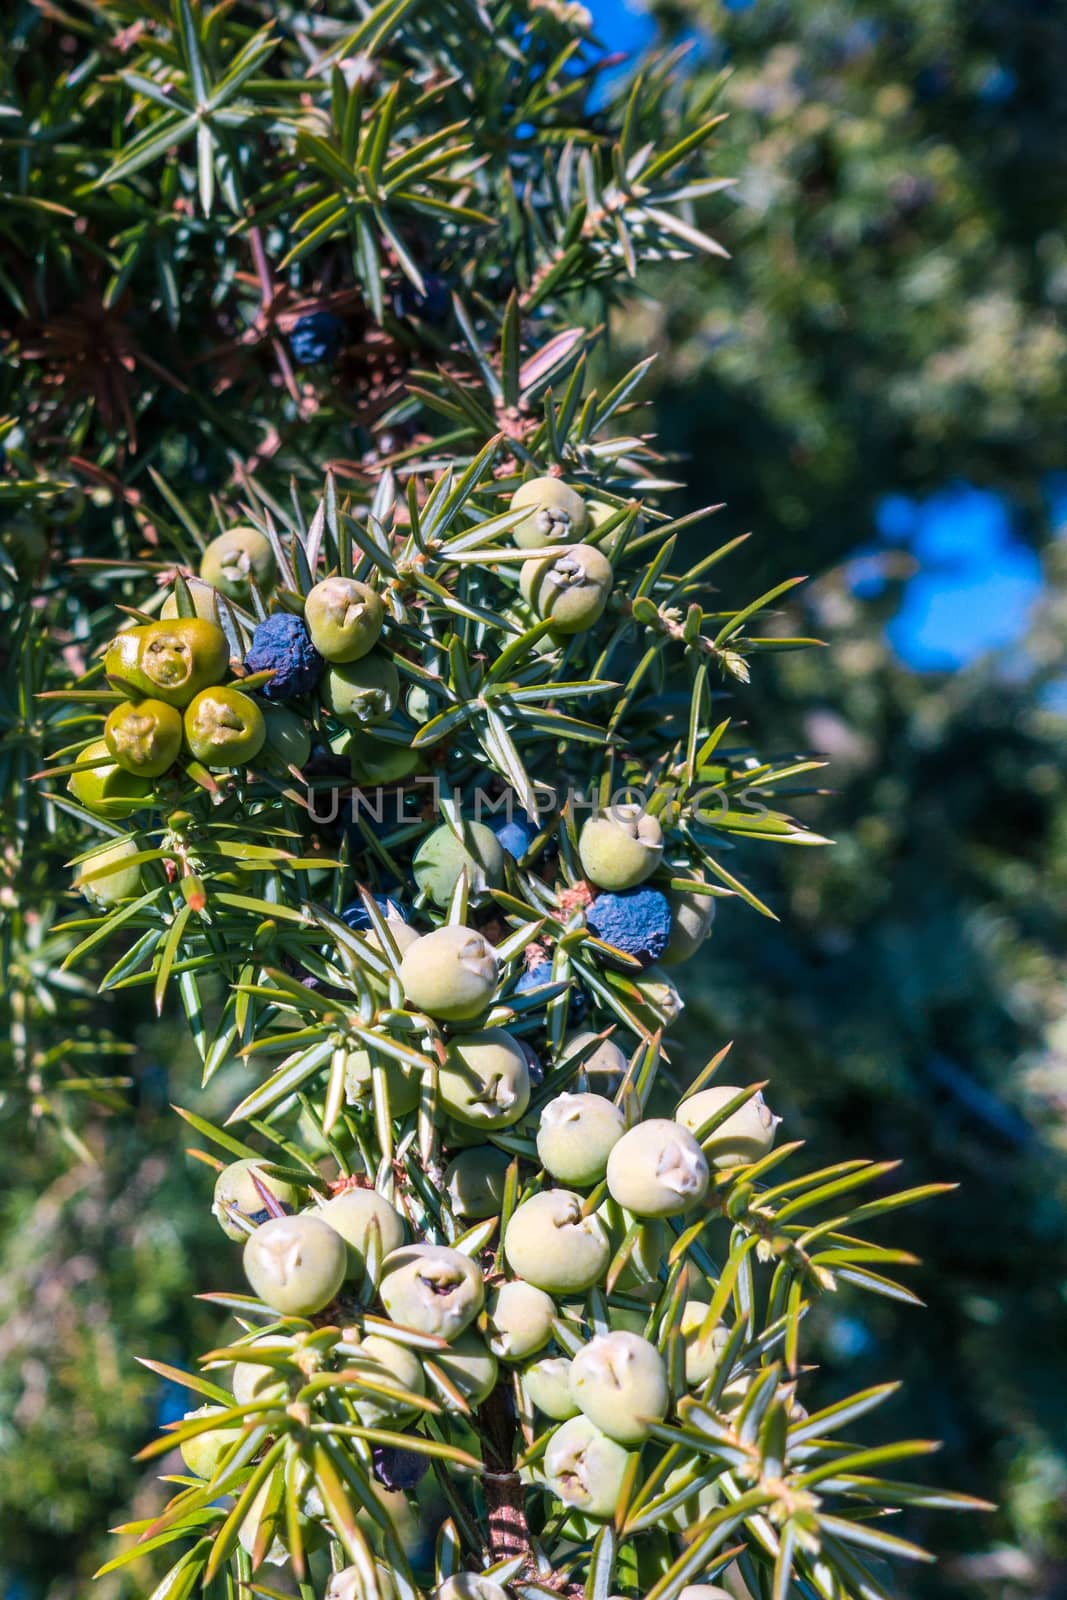 Juniper berries on a common juniper bush